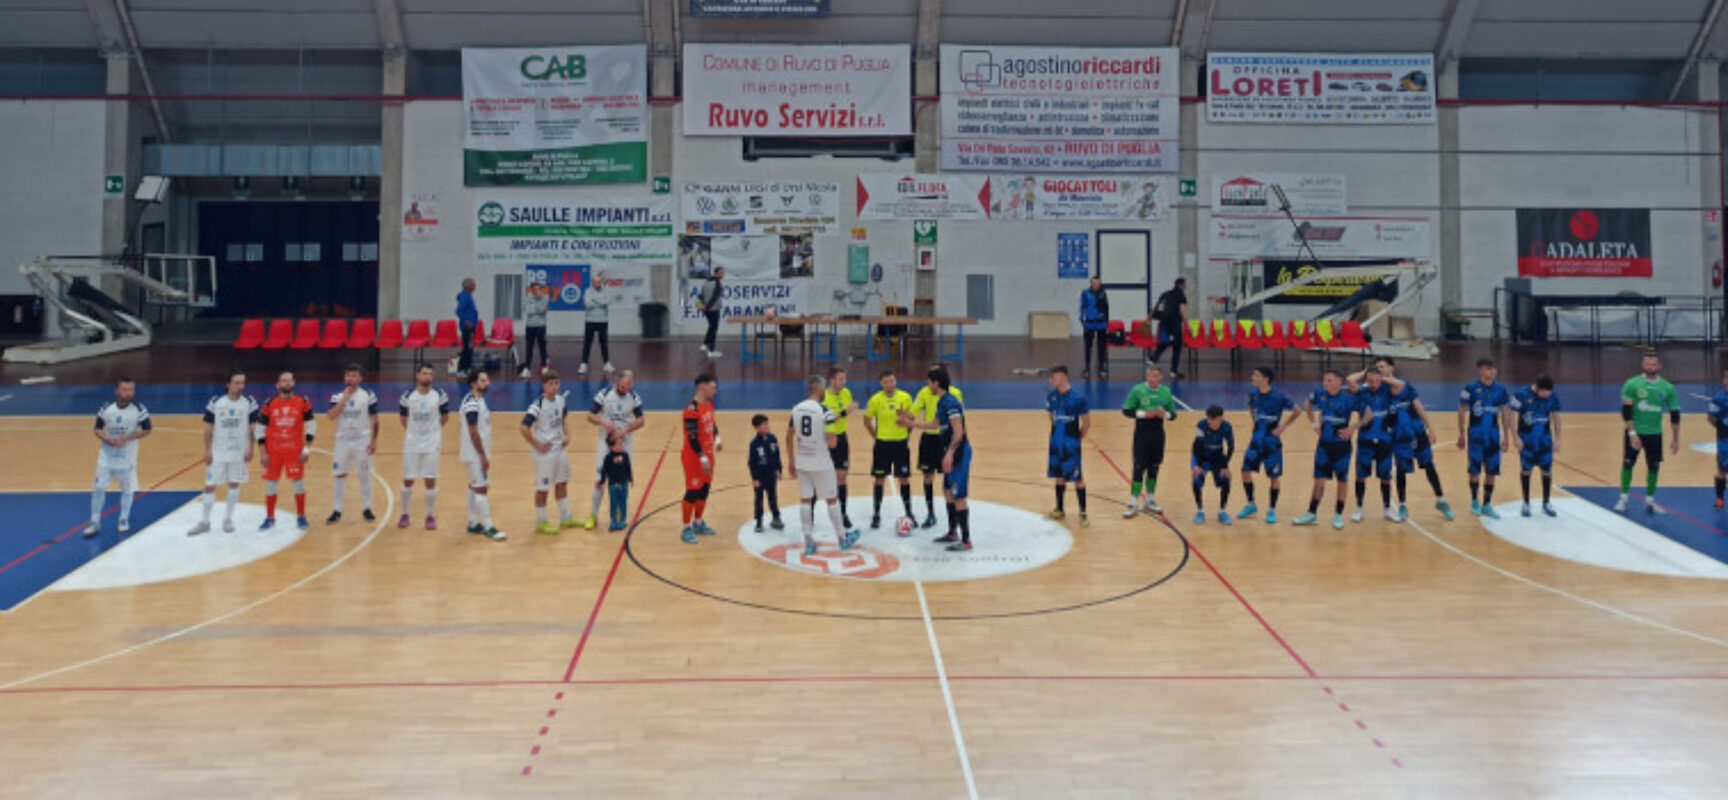 Futsal: Cinco cade a Ruvo, Nettuno torna a sorridere/ RISULTATI E CLASSIFICHE